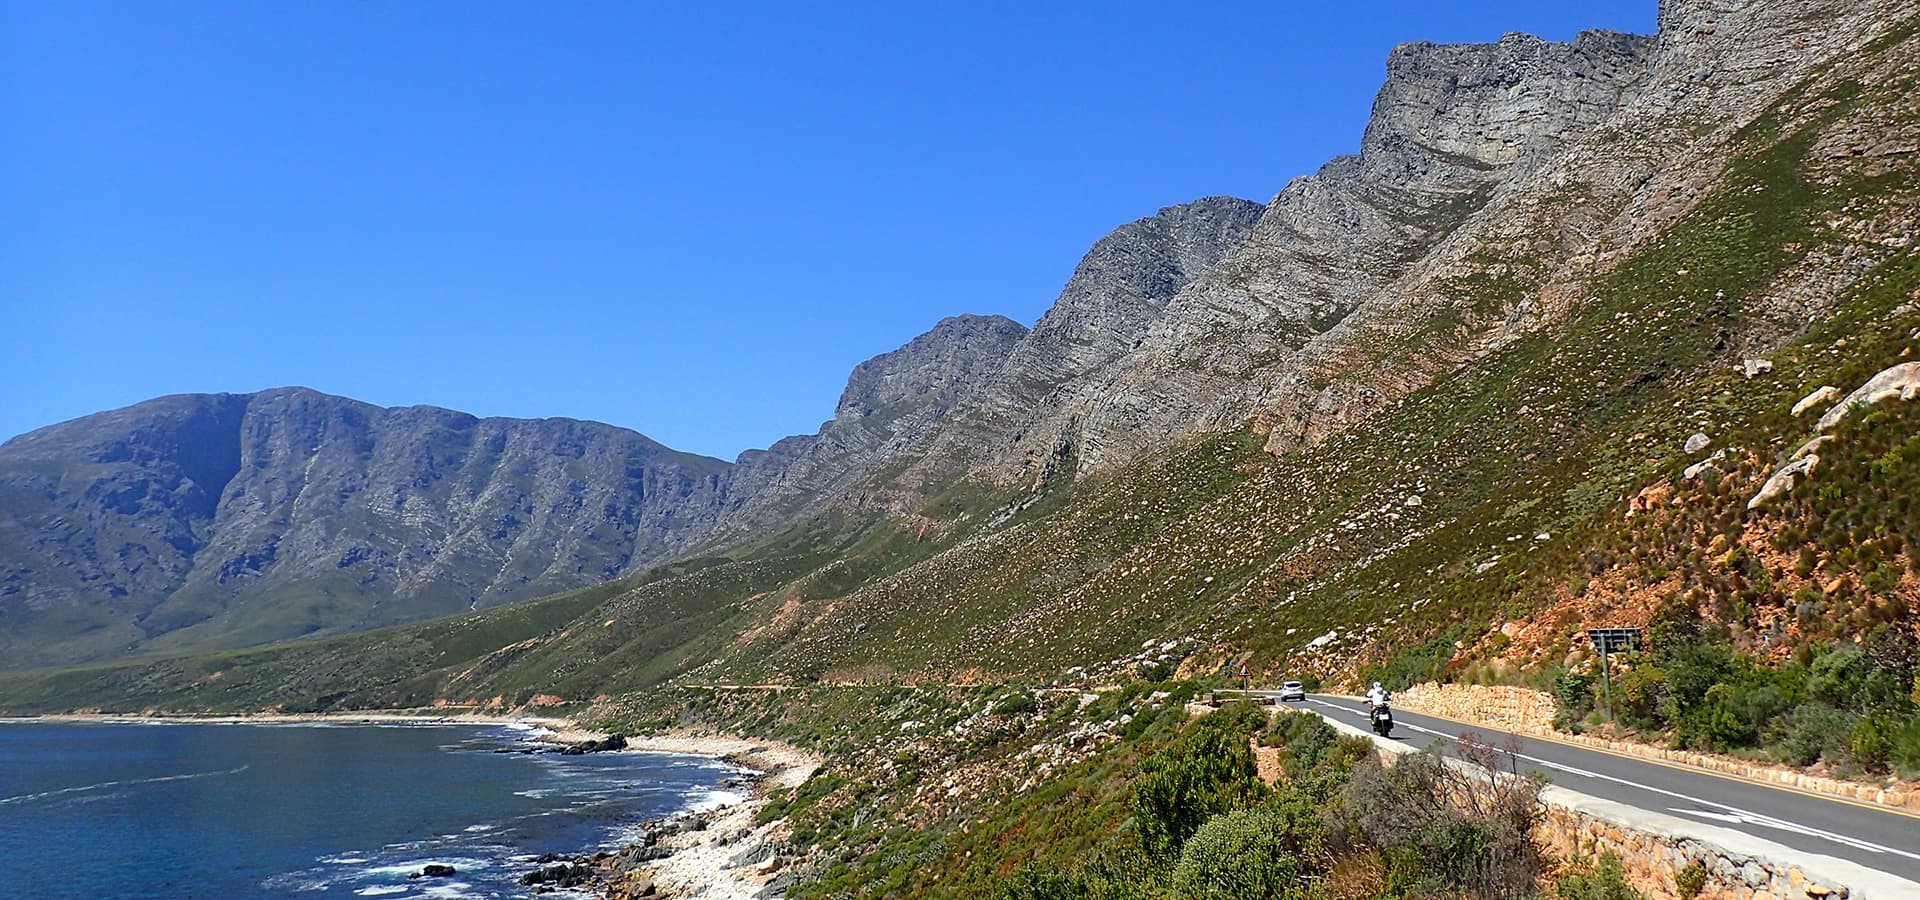 南アフリカ アグラス岬と喜望峰 アフリカ大陸最南端ツーリング 9日間 海外ツーリングの道祖神